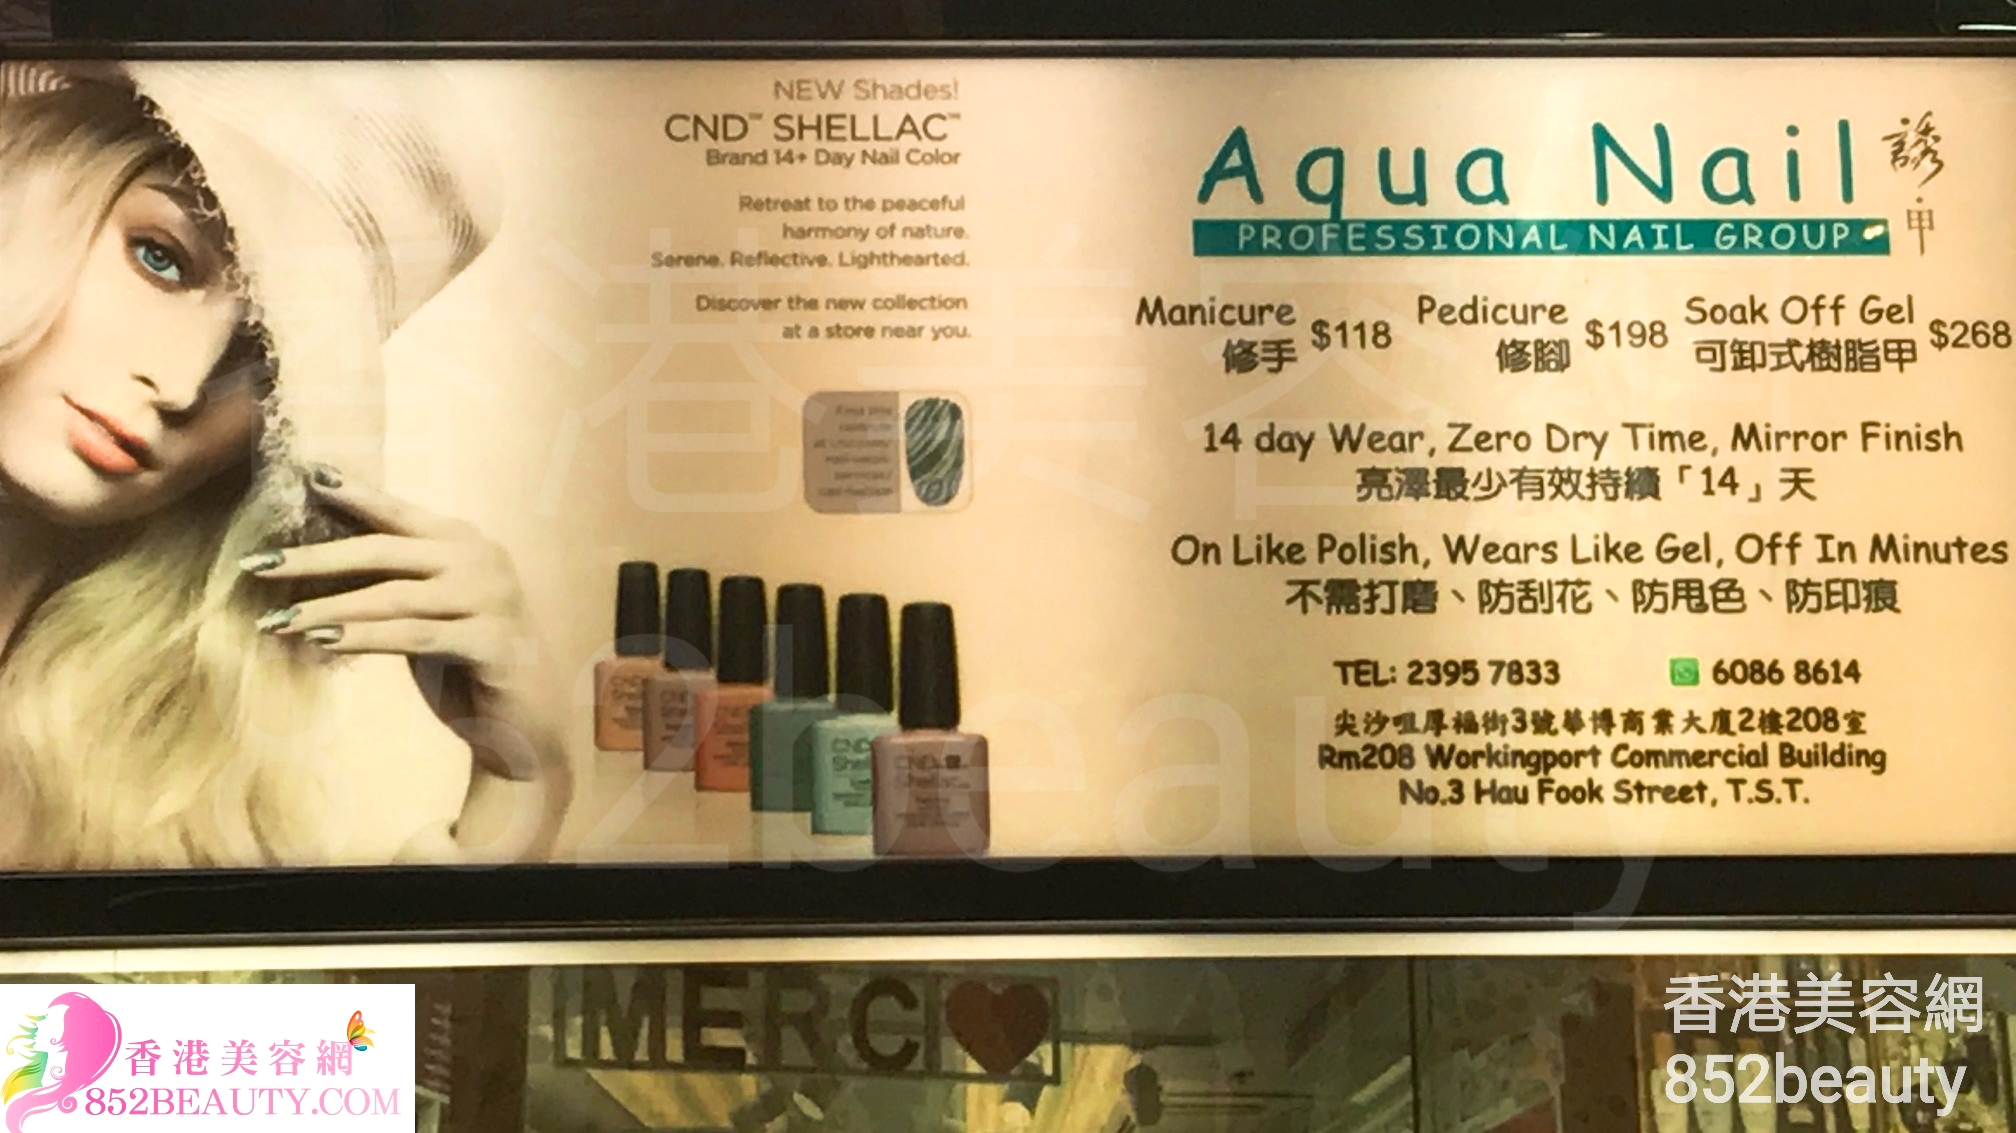 Manicure: Aqua Nail